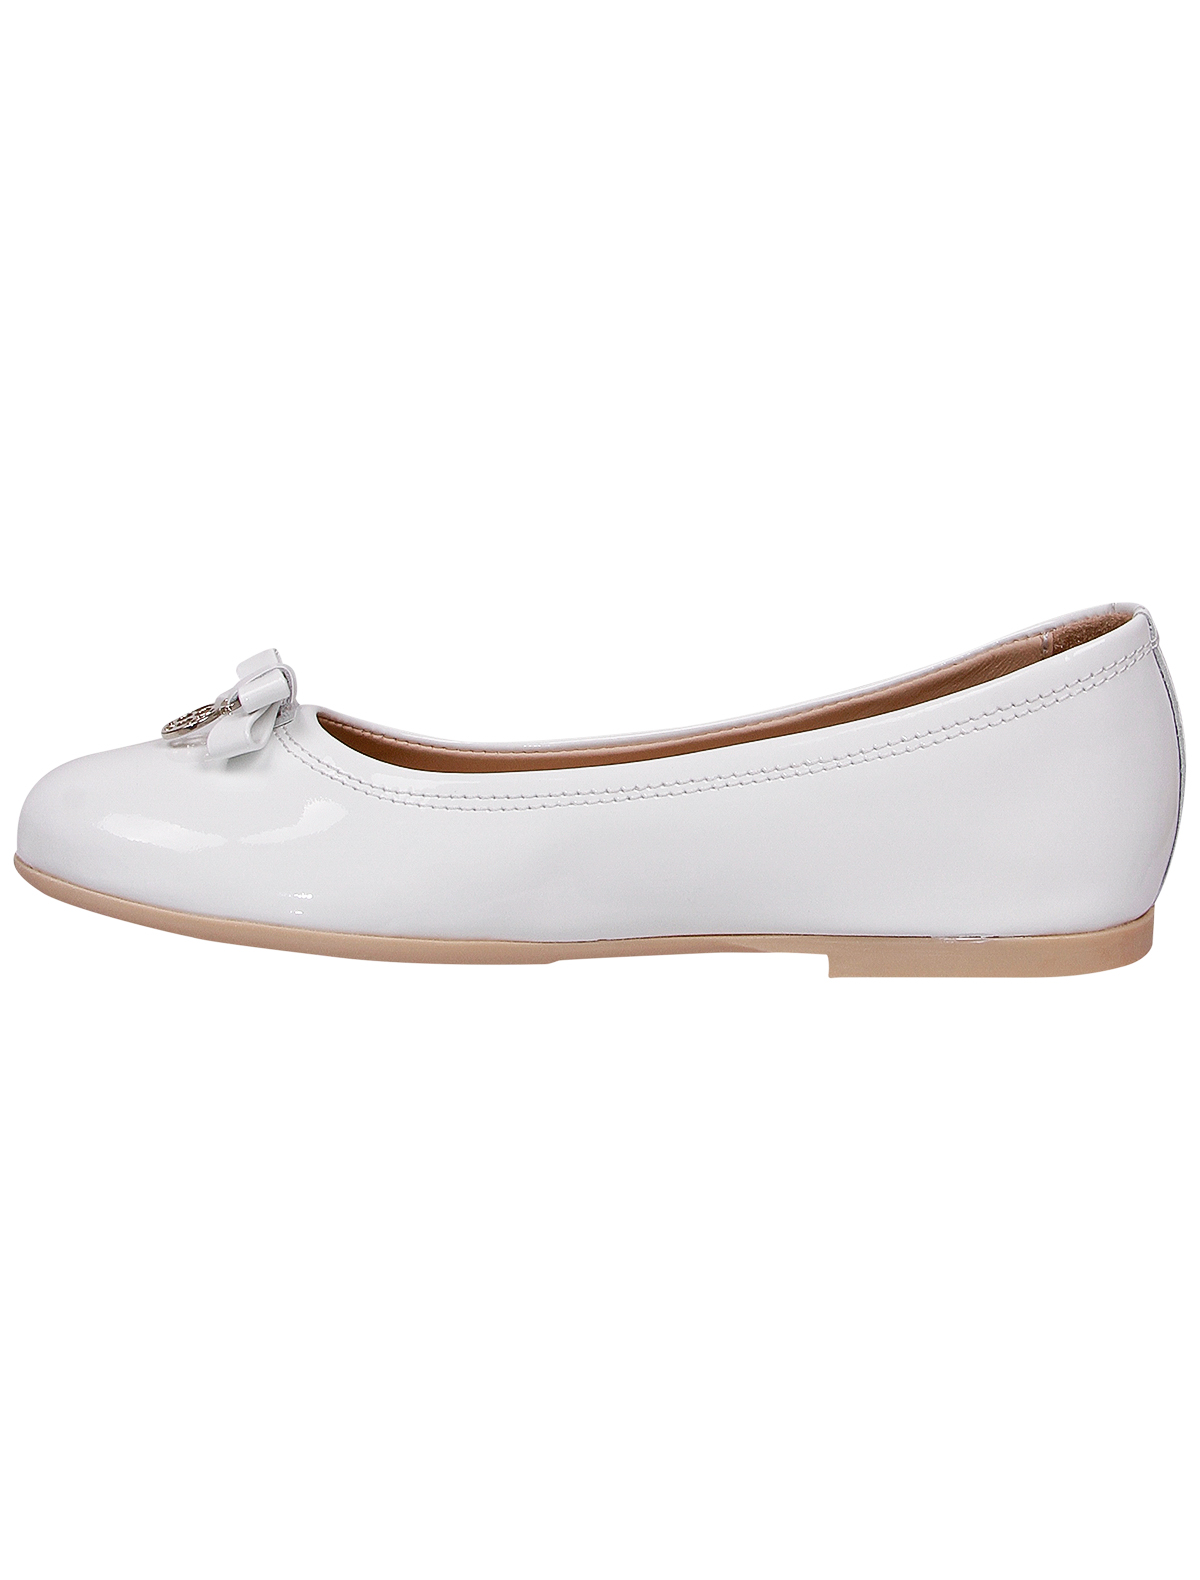 Туфли Florens 1951840, цвет белый, размер 35 2011209970054 - фото 3